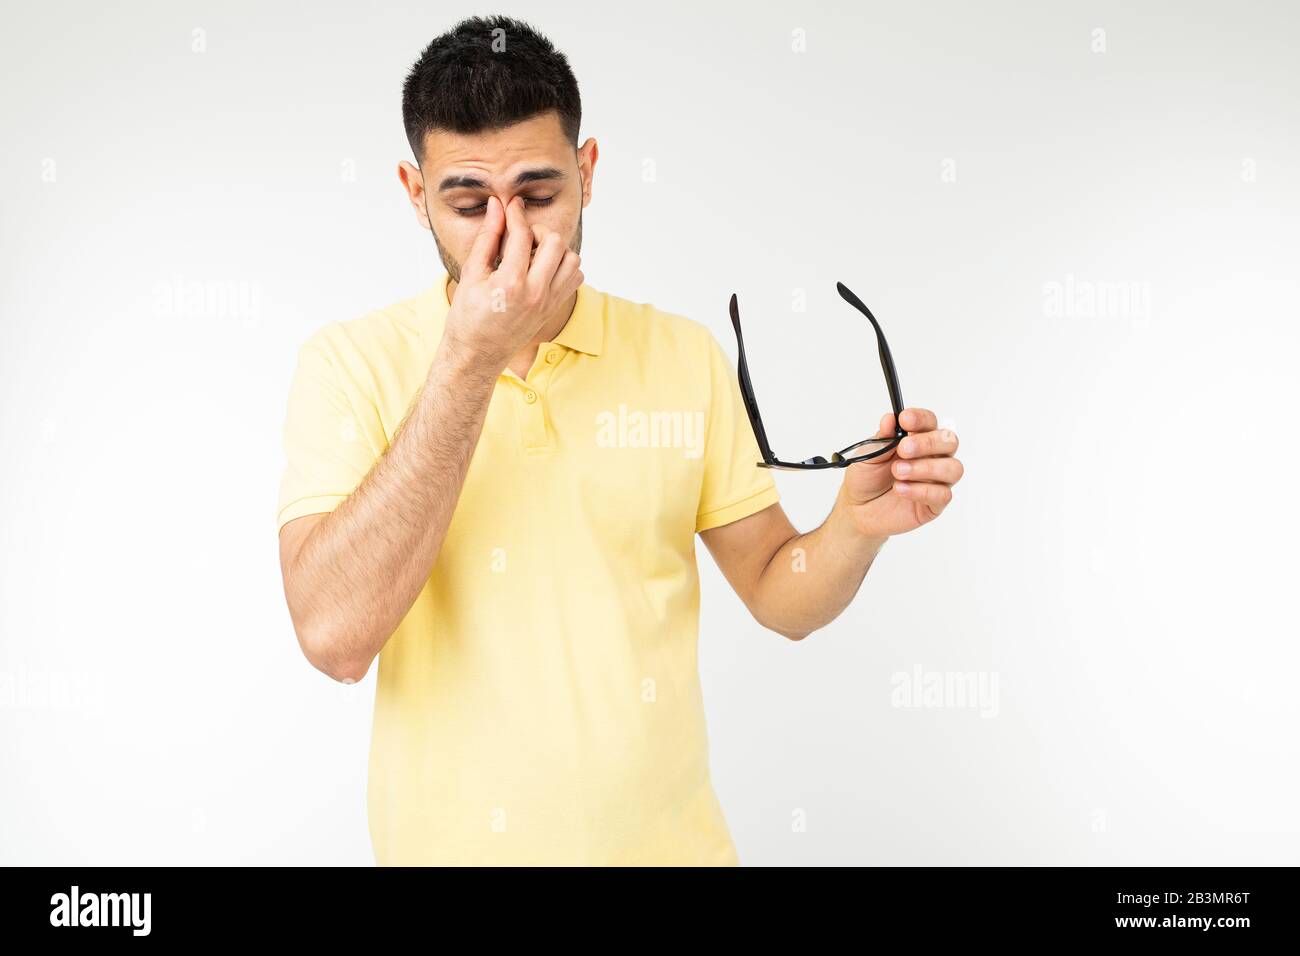 Guy fühlt Schmerzen in seinen Augen, indem er seine Brille entfernt, um auf einem weißen Hintergrund zu sehen Stockfoto